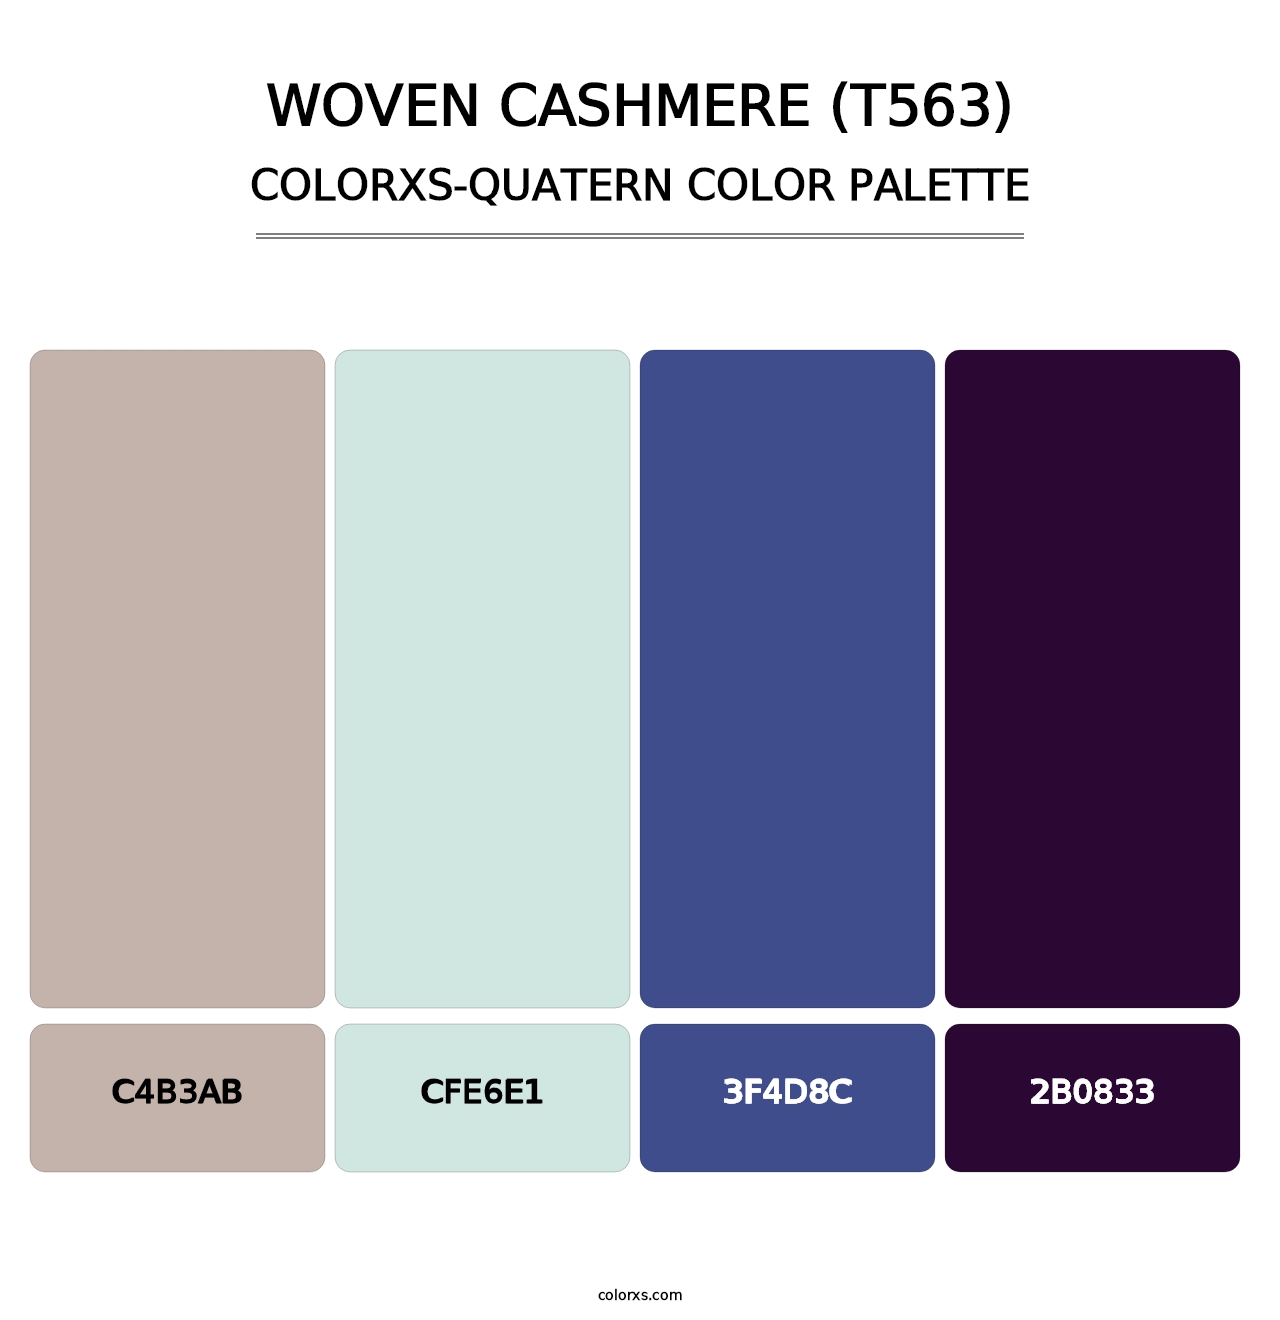 Woven Cashmere (T563) - Colorxs Quatern Palette